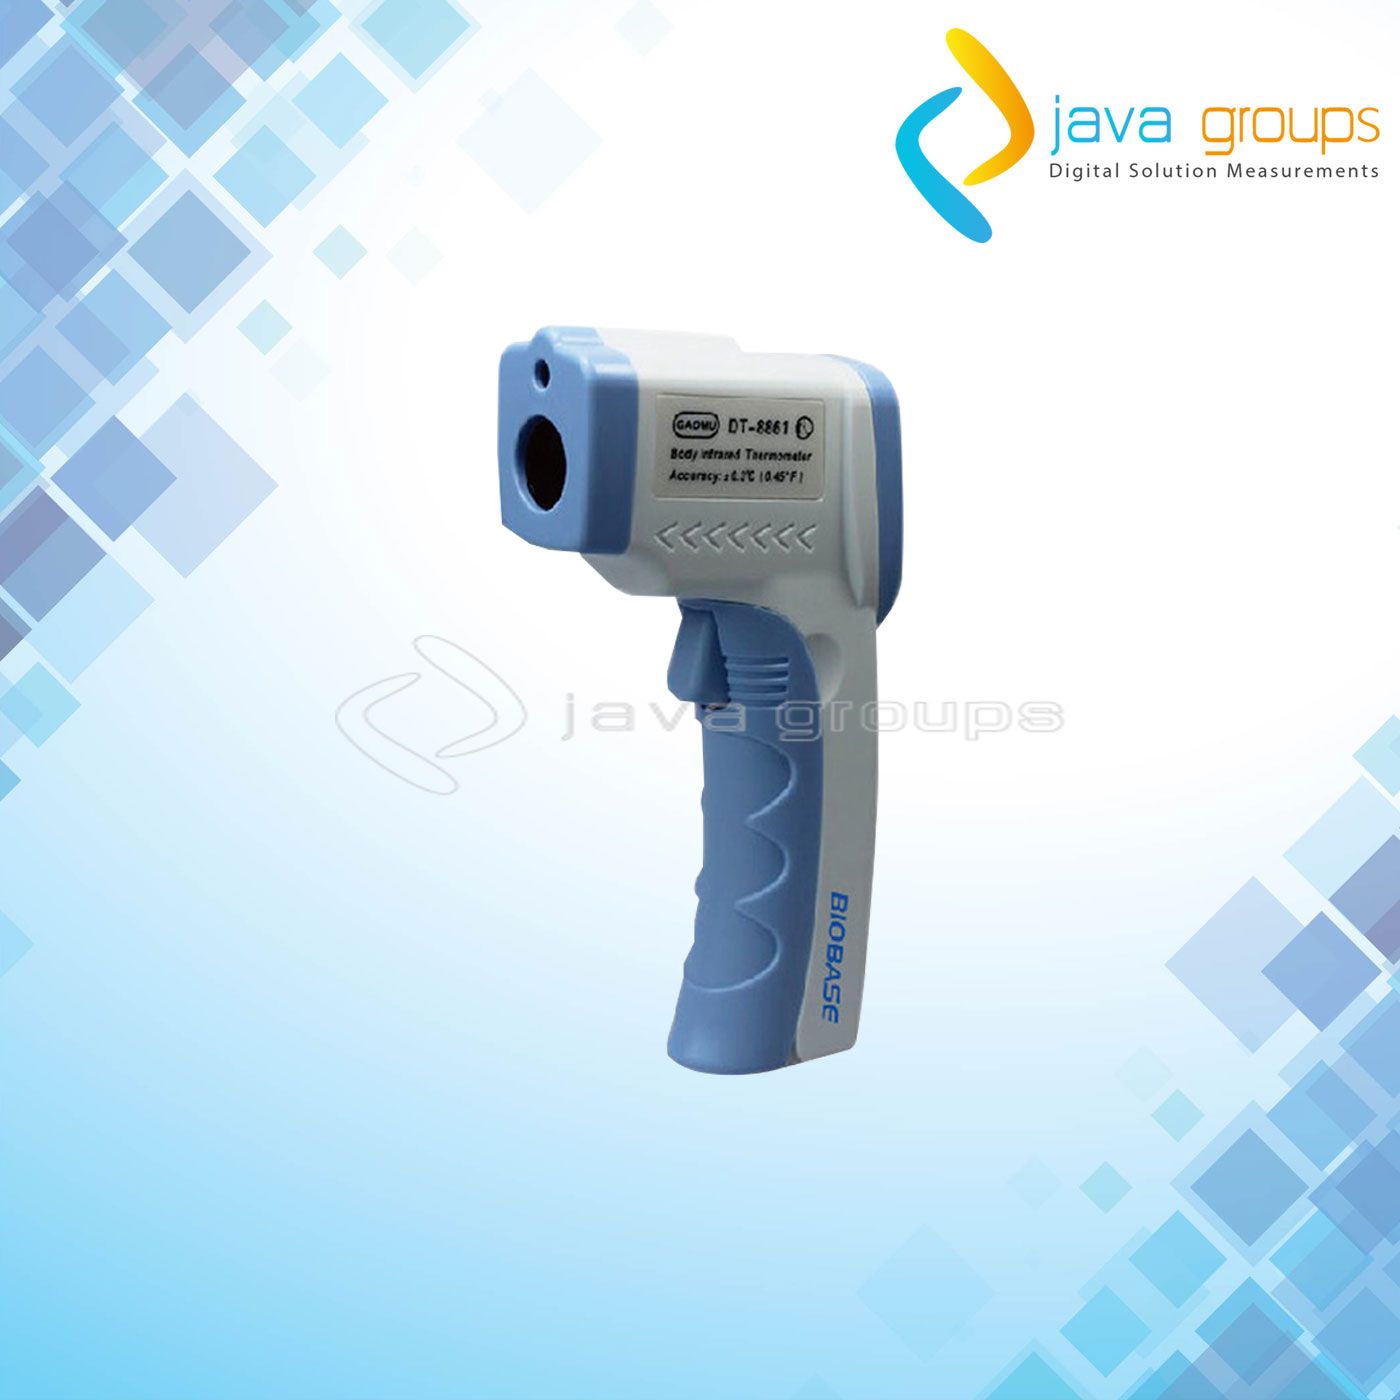 Alat Ukur Suhu Tubuh Biobase Laser Infrared Thermometer DT-8861